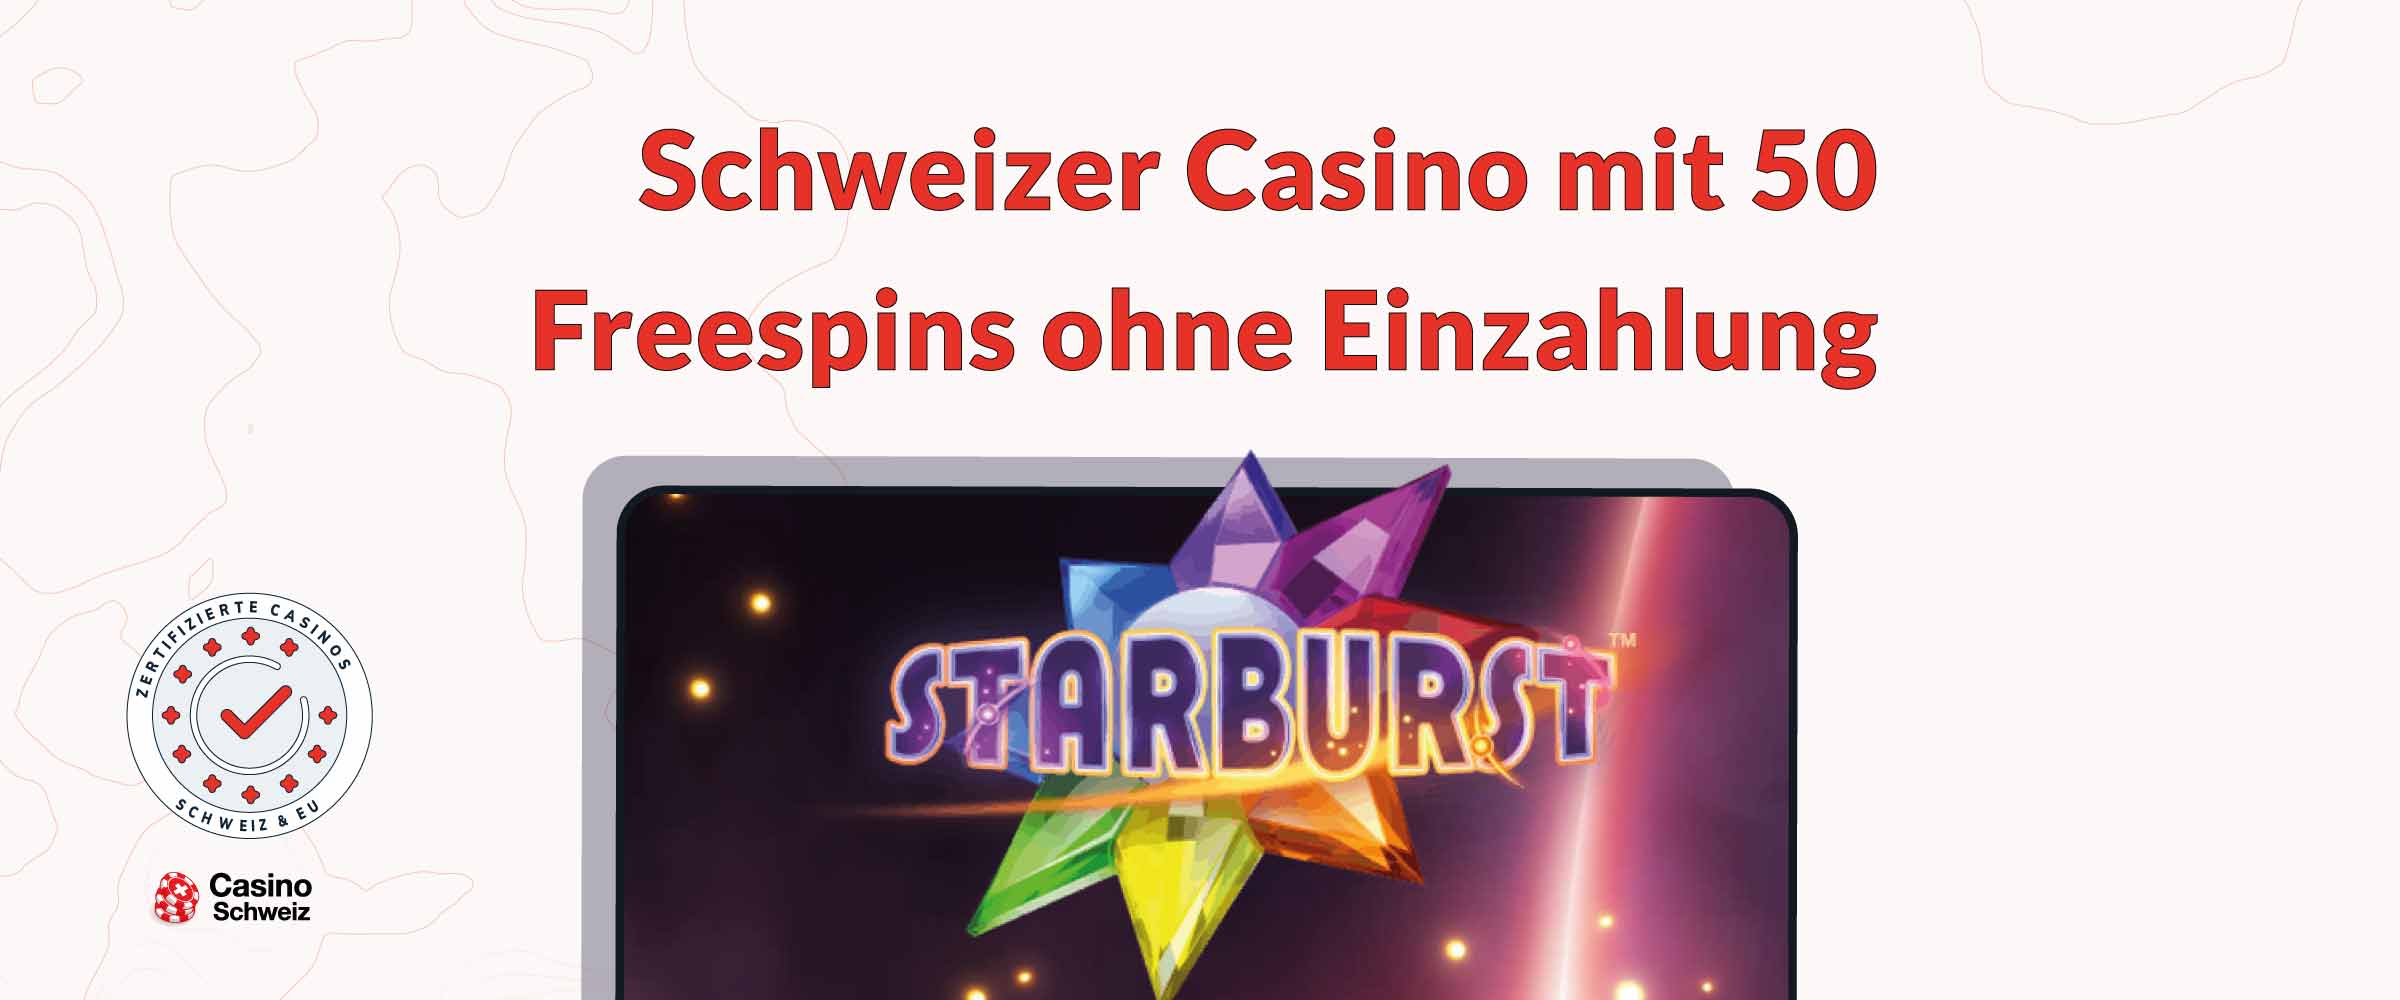 Schweizer Casinos 50 Freespins ohne Einzahlung